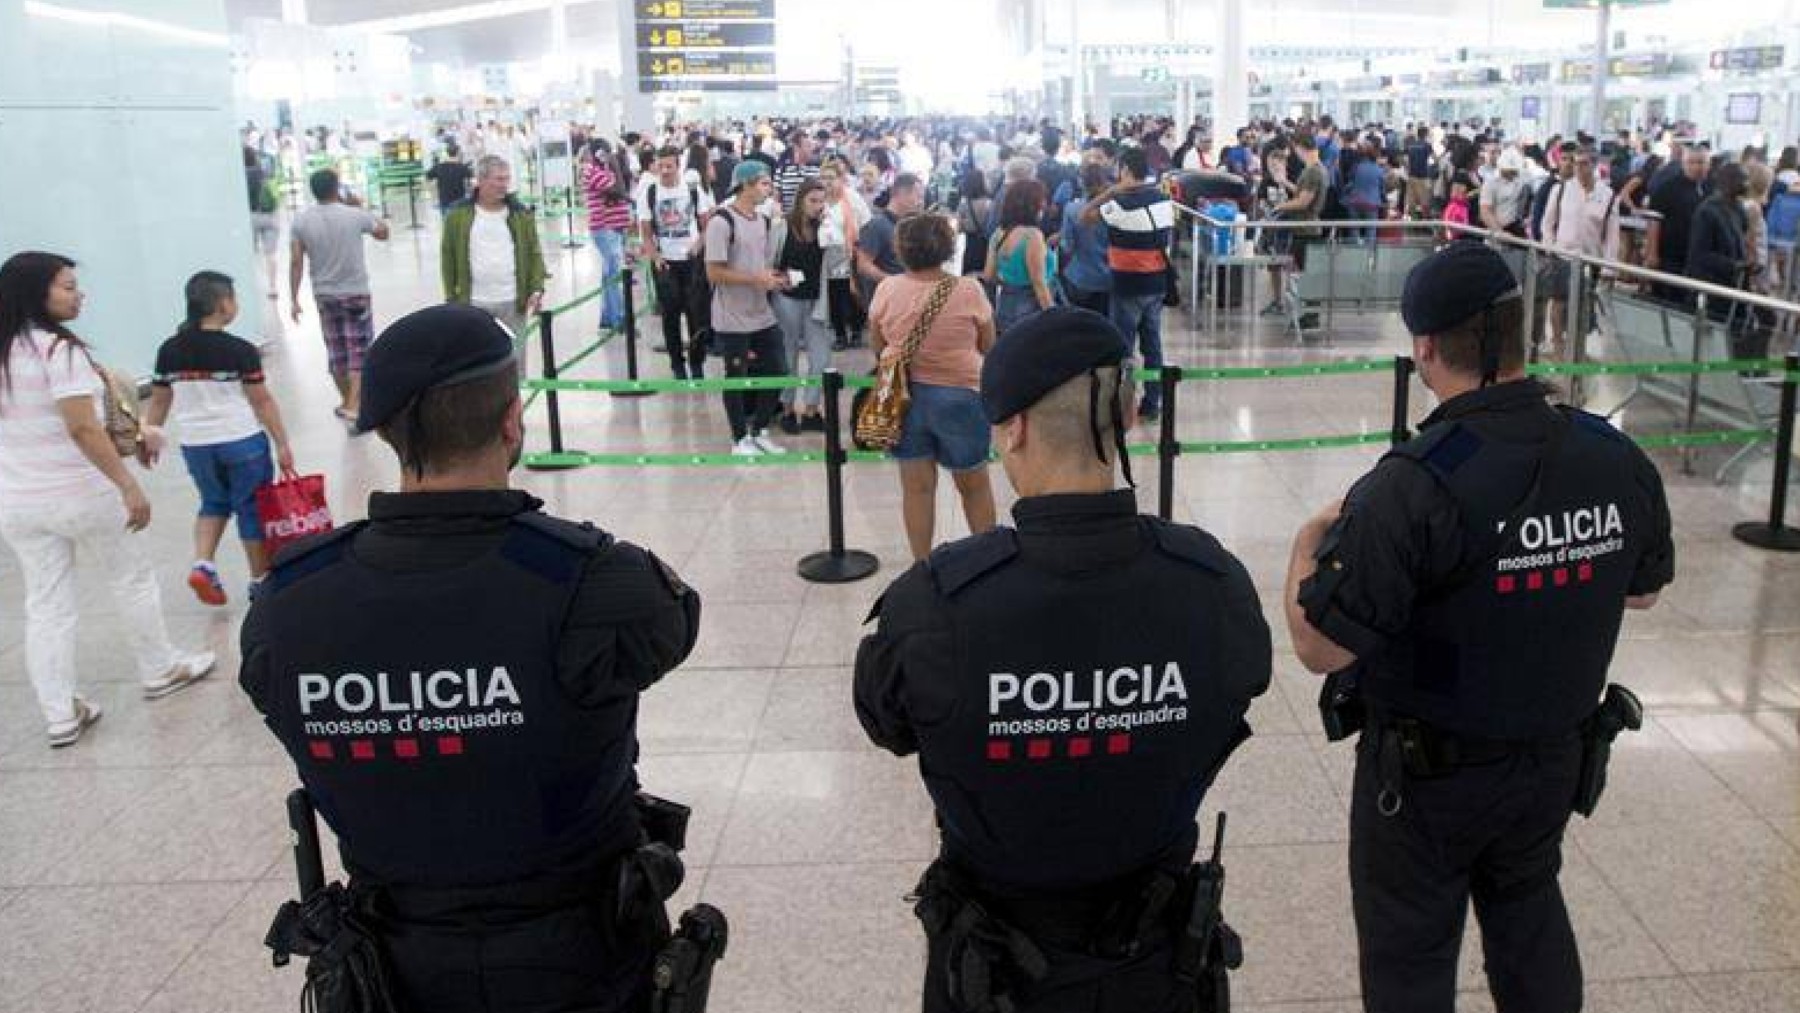 Mossos d’Esquadra de servicio en el aeropuerto de El Prat